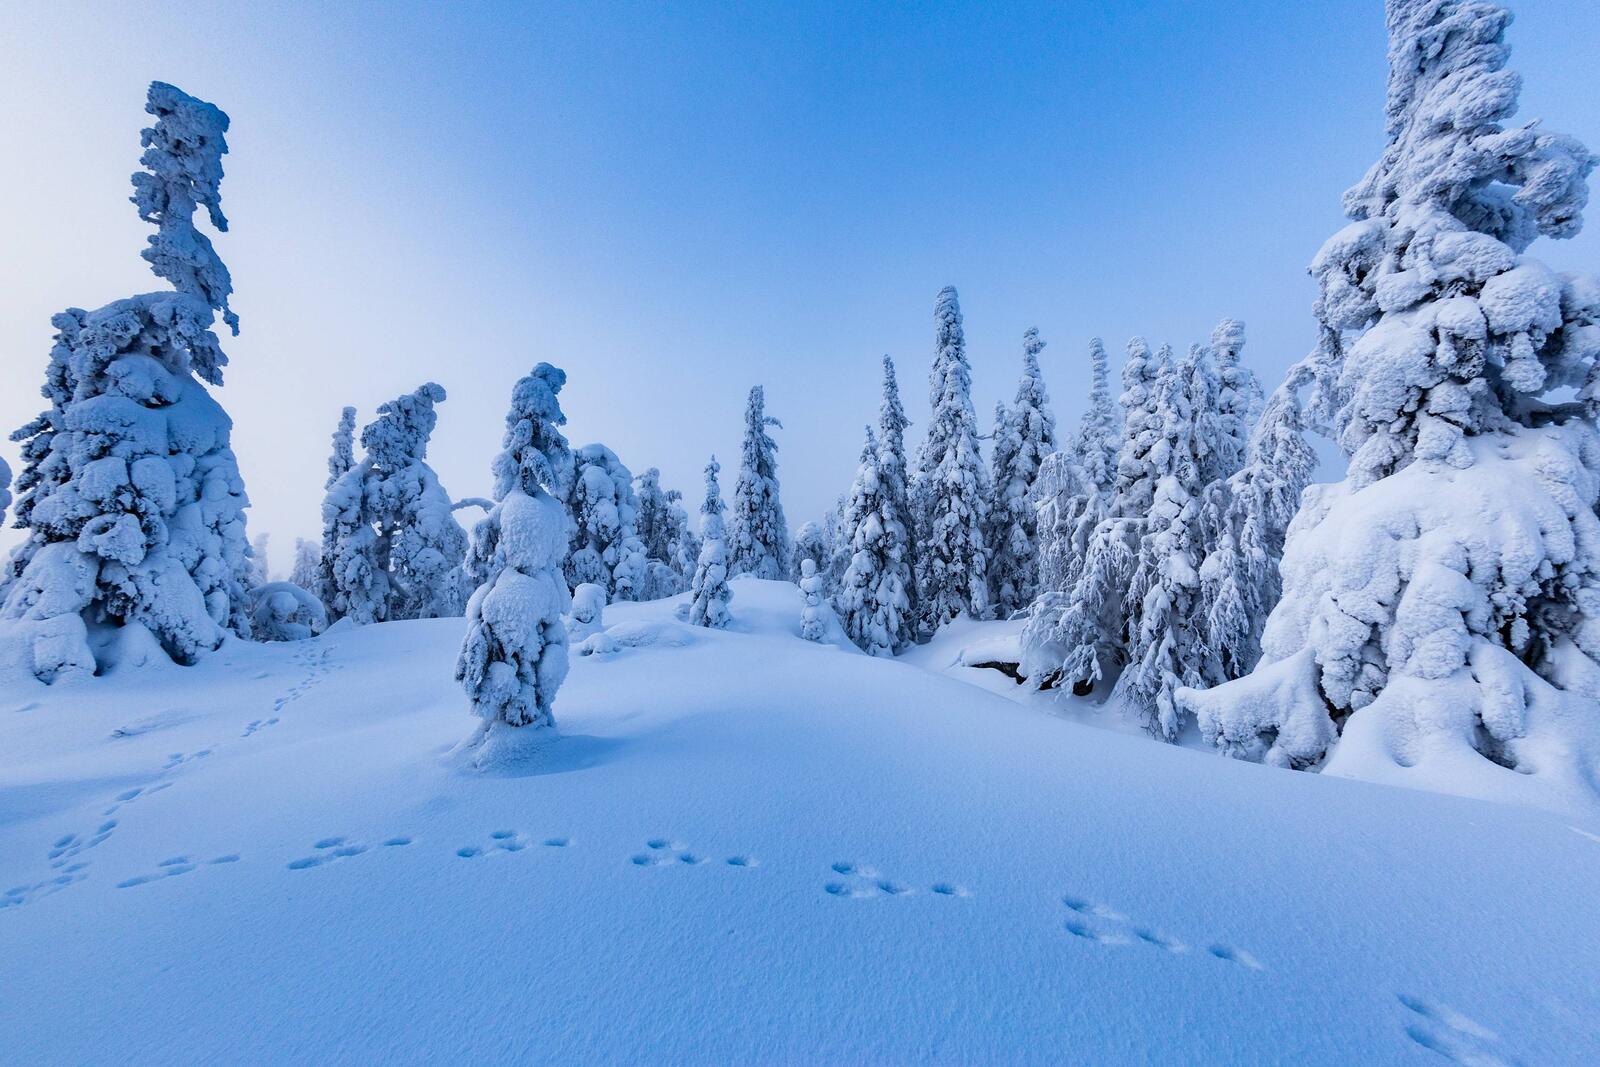 Обои Финляндия зима елки в снегу на рабочий стол